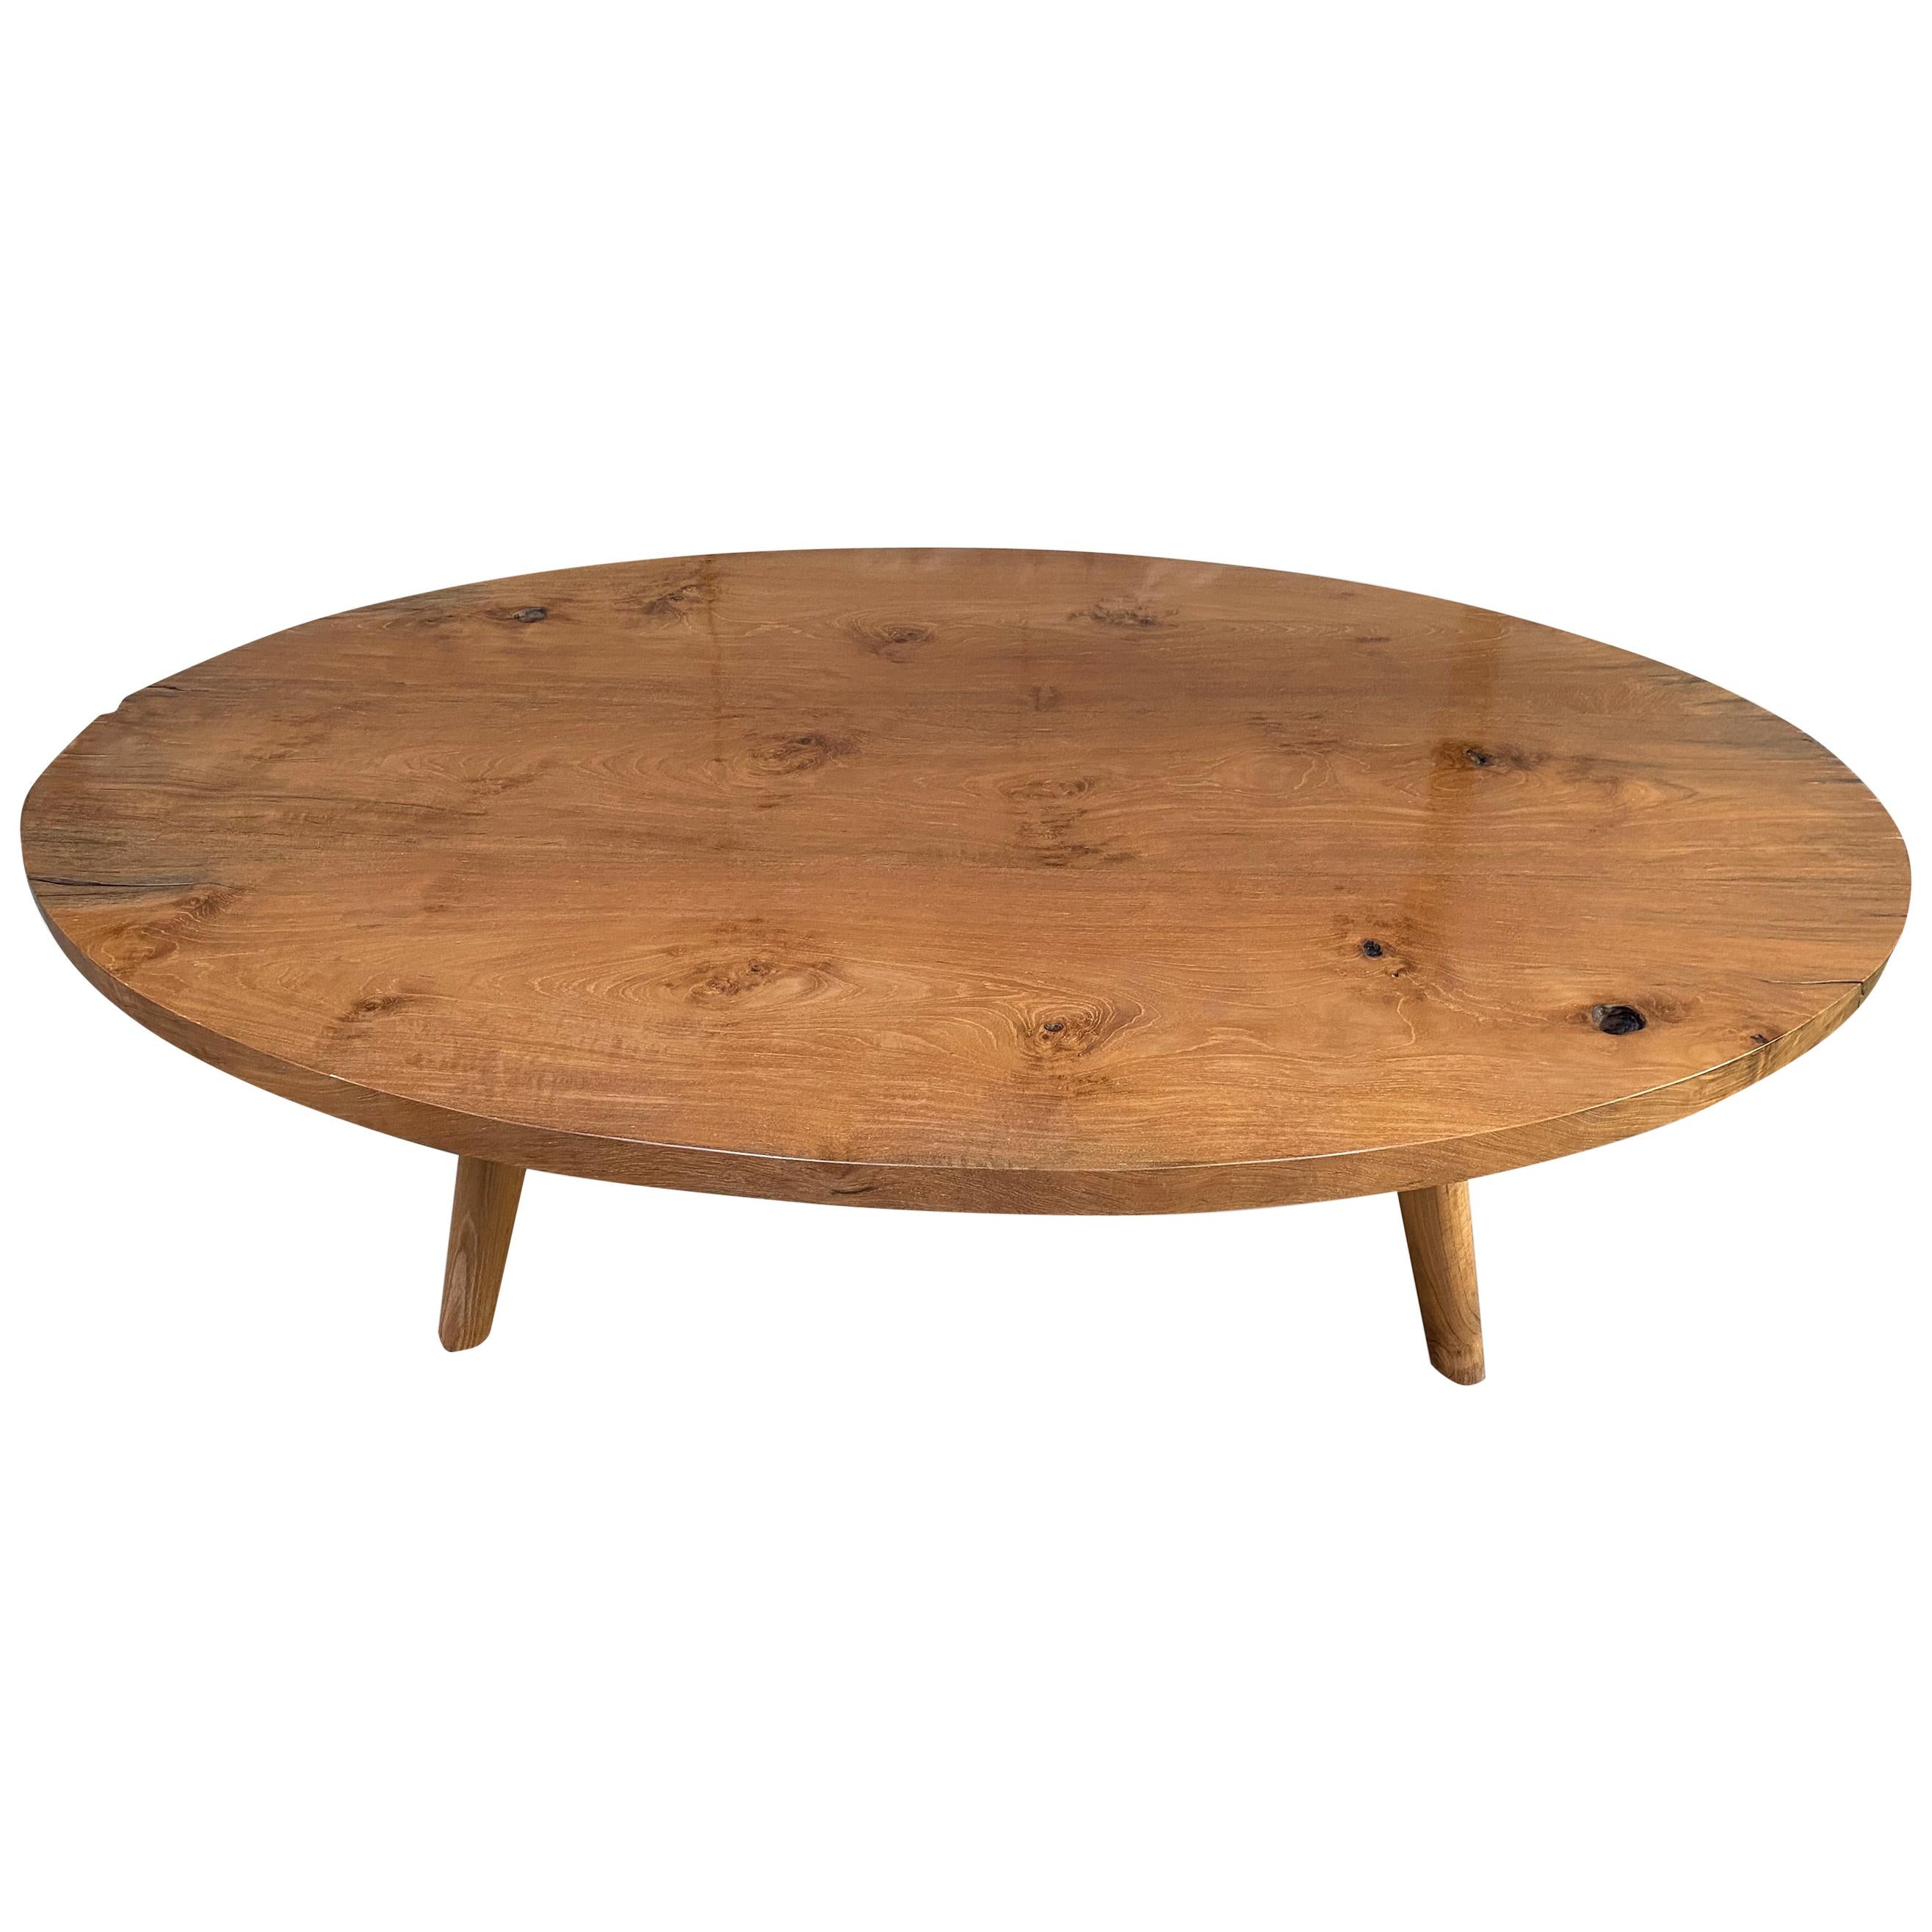 Andrianna Shamaris Mid Century Style Reclaimed Teak Wood Oval Coffee Table